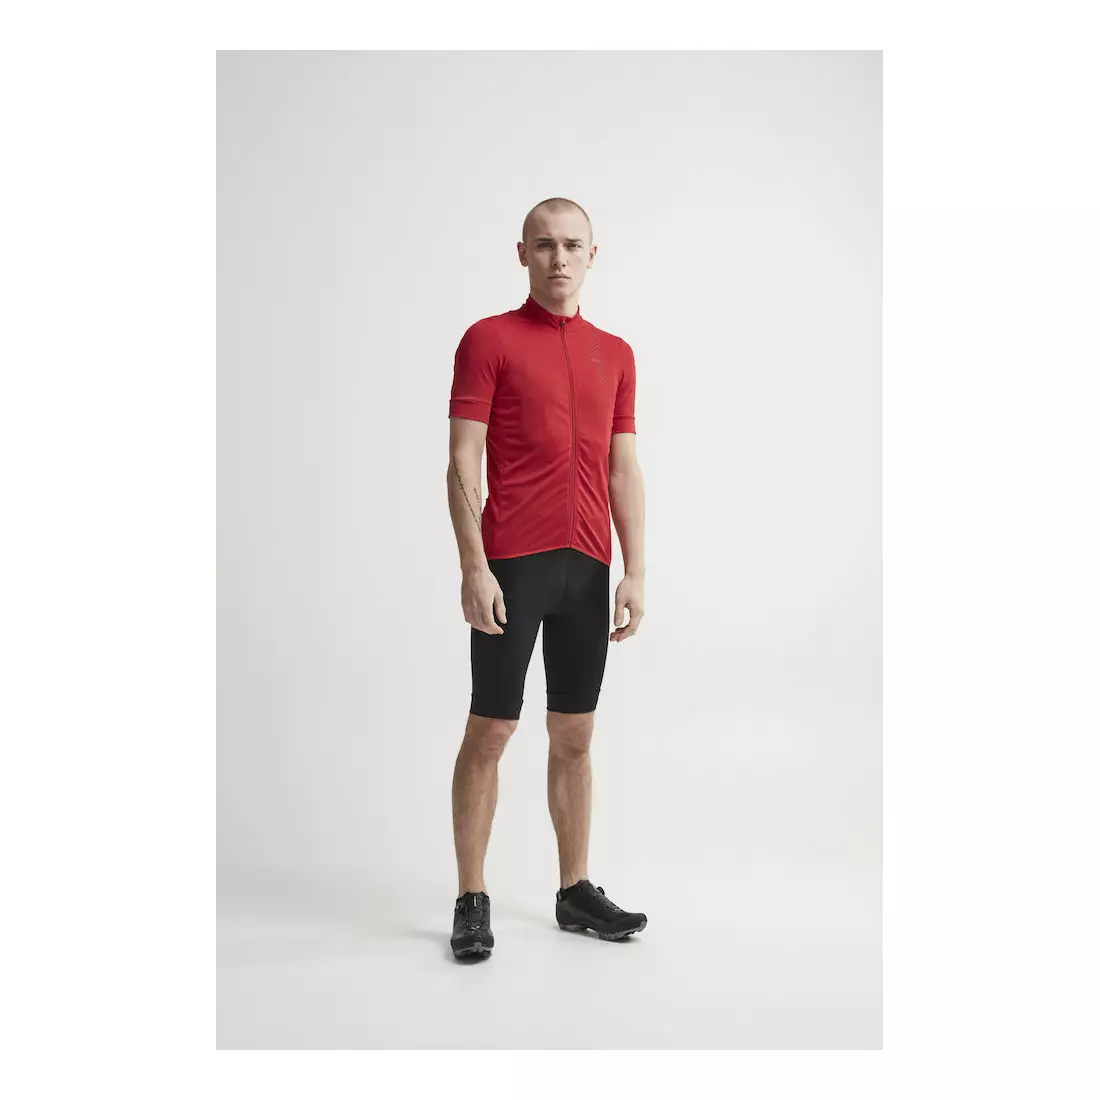 CRAFT RISE men's cycling shorts, bib, black, 1906099-999999